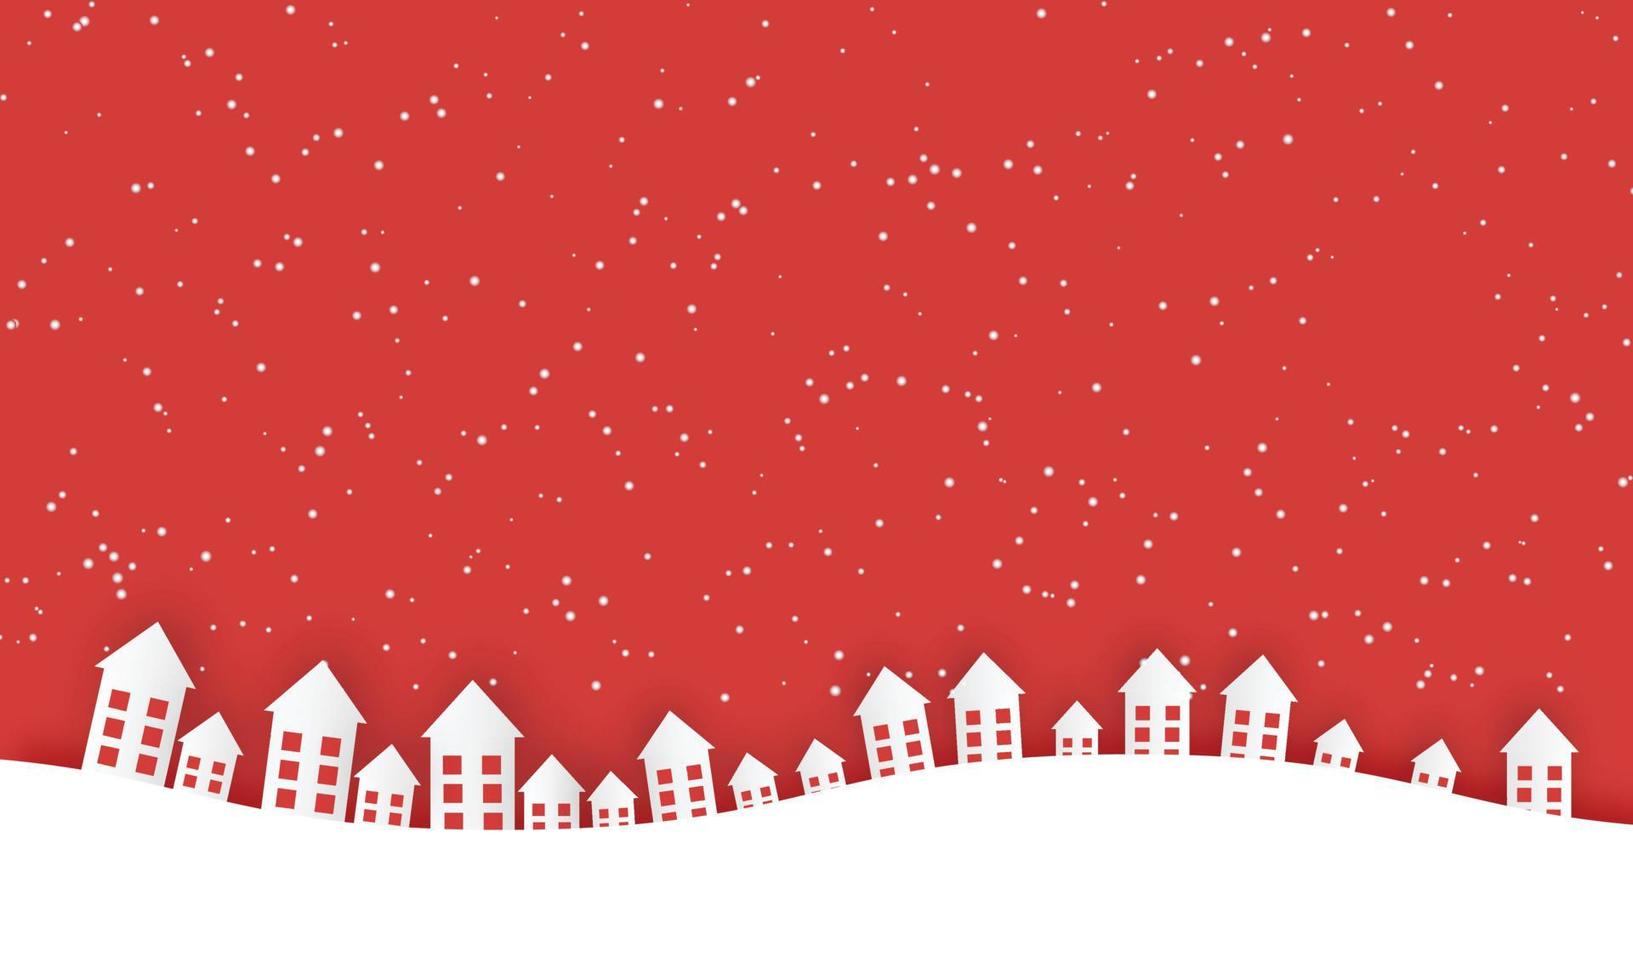 silueta de pueblo pequeño de navidad sobre fondo rojo. tarjeta de felicitación de felices fiestas. vector